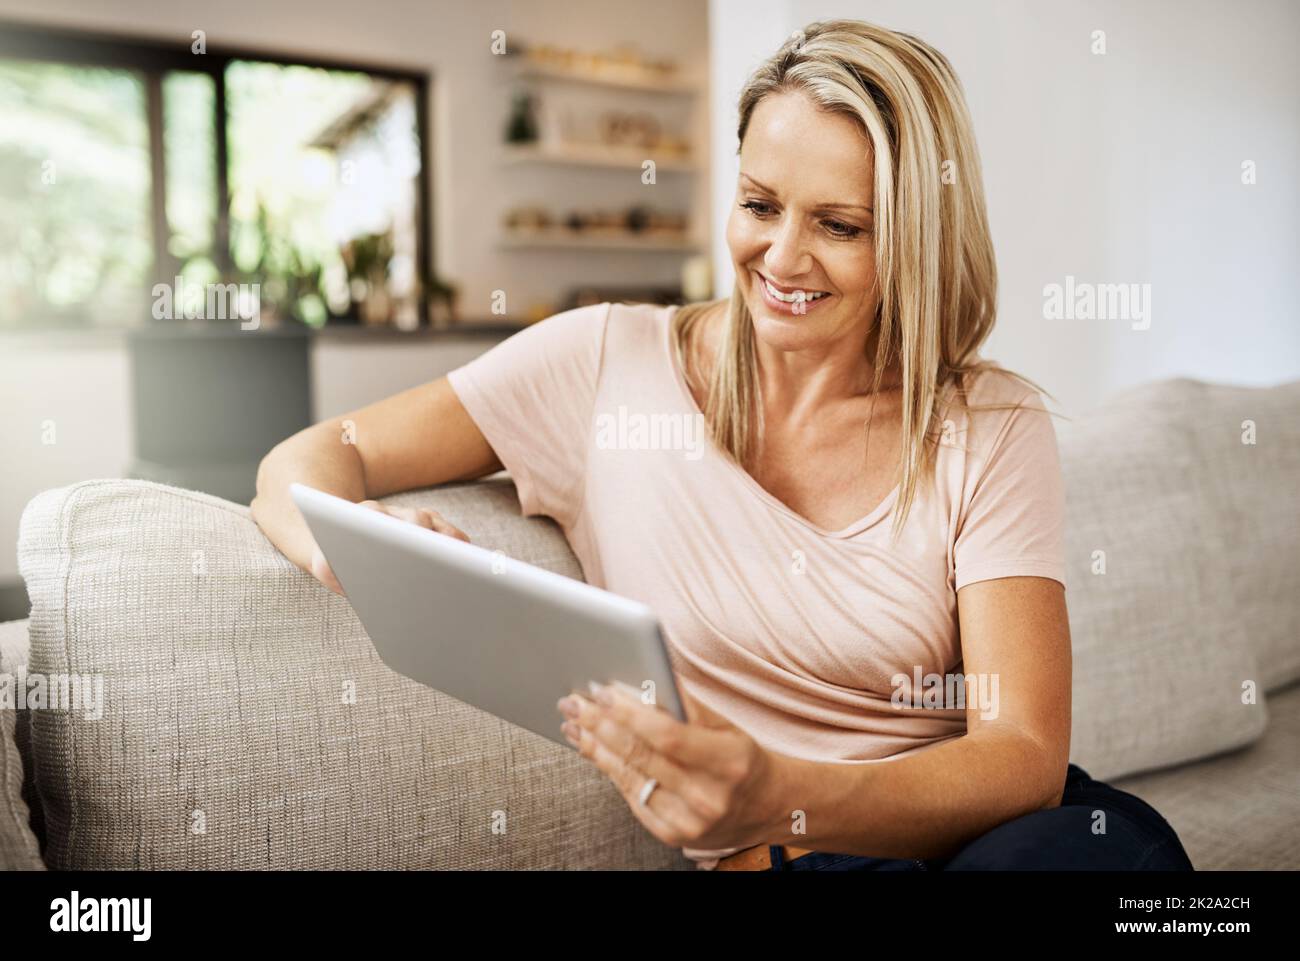 Messagerie instantanée sociale même lorsque vous êtes seul à la maison. Photo d'une femme mûre utilisant sa tablette numérique tout en se relaxant sur son canapé à la maison. Banque D'Images